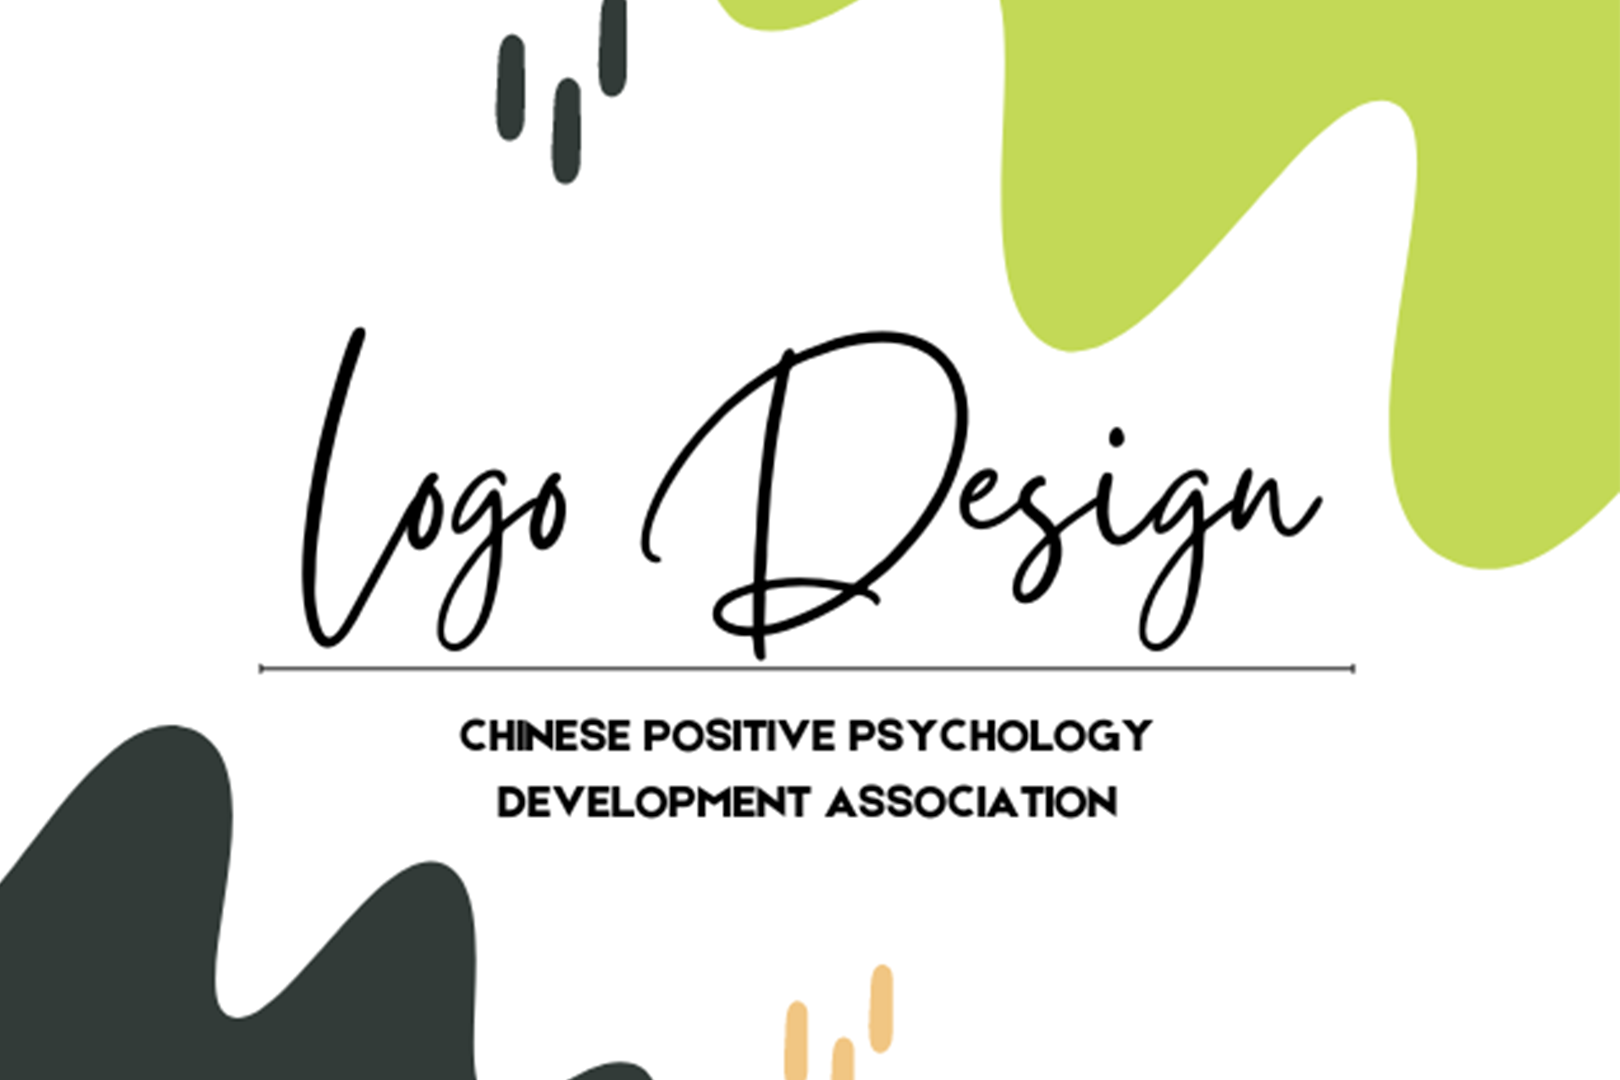 LOGO 設計徵選活動｜中華正向心理學發展協會